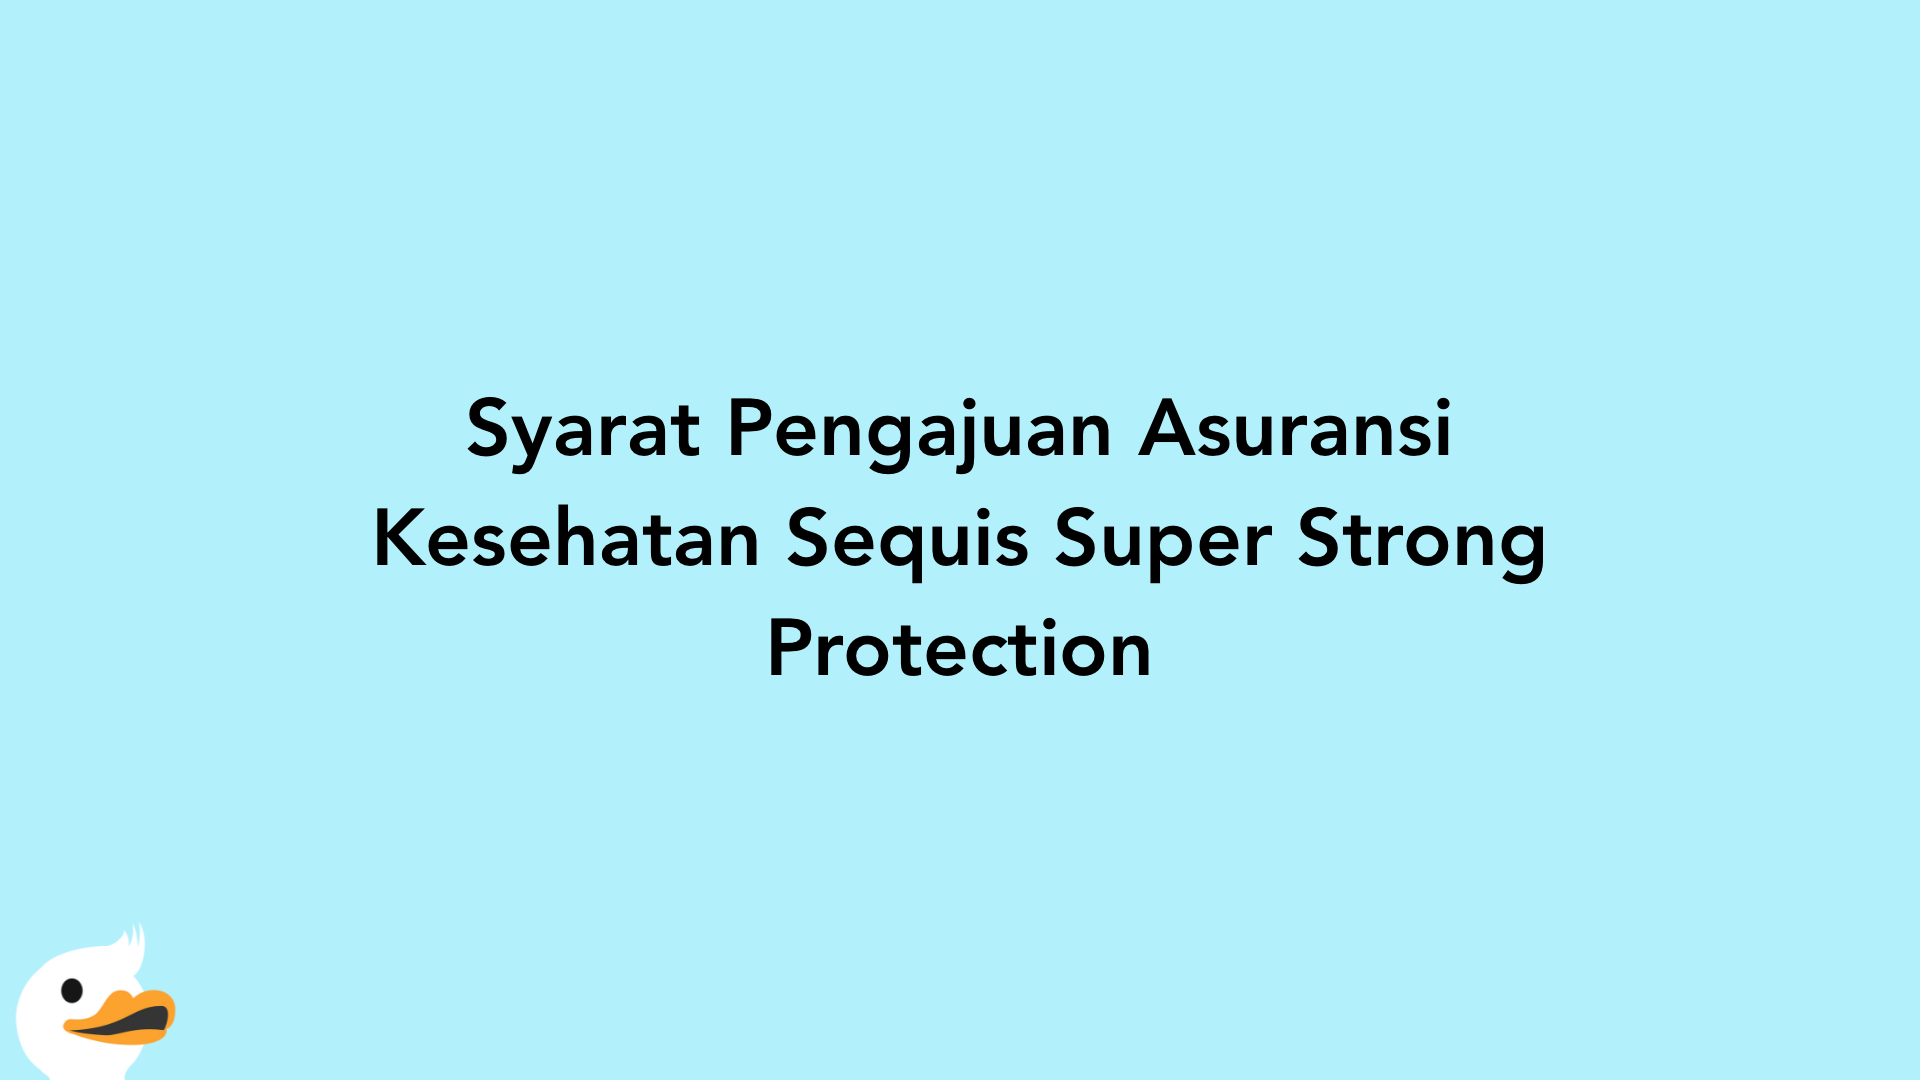 Syarat Pengajuan Asuransi Kesehatan Sequis Super Strong Protection